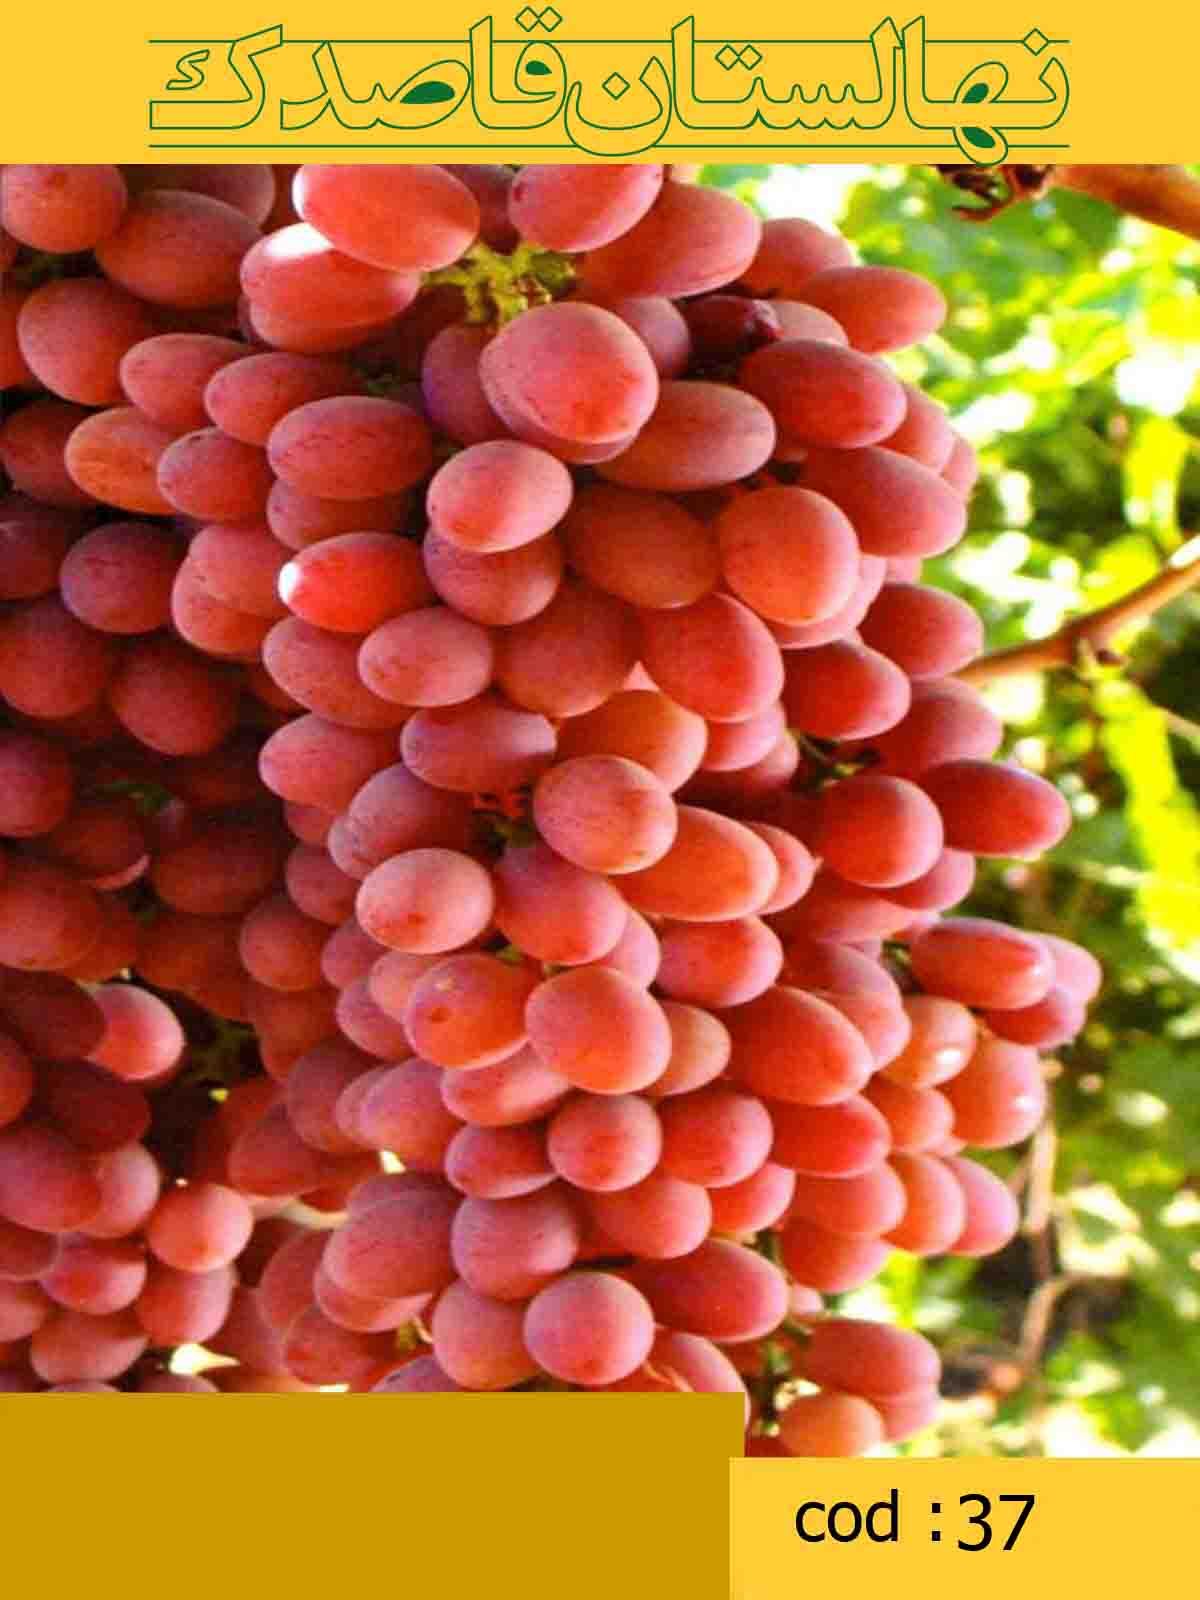  انگور رد سیدلس(کد37)